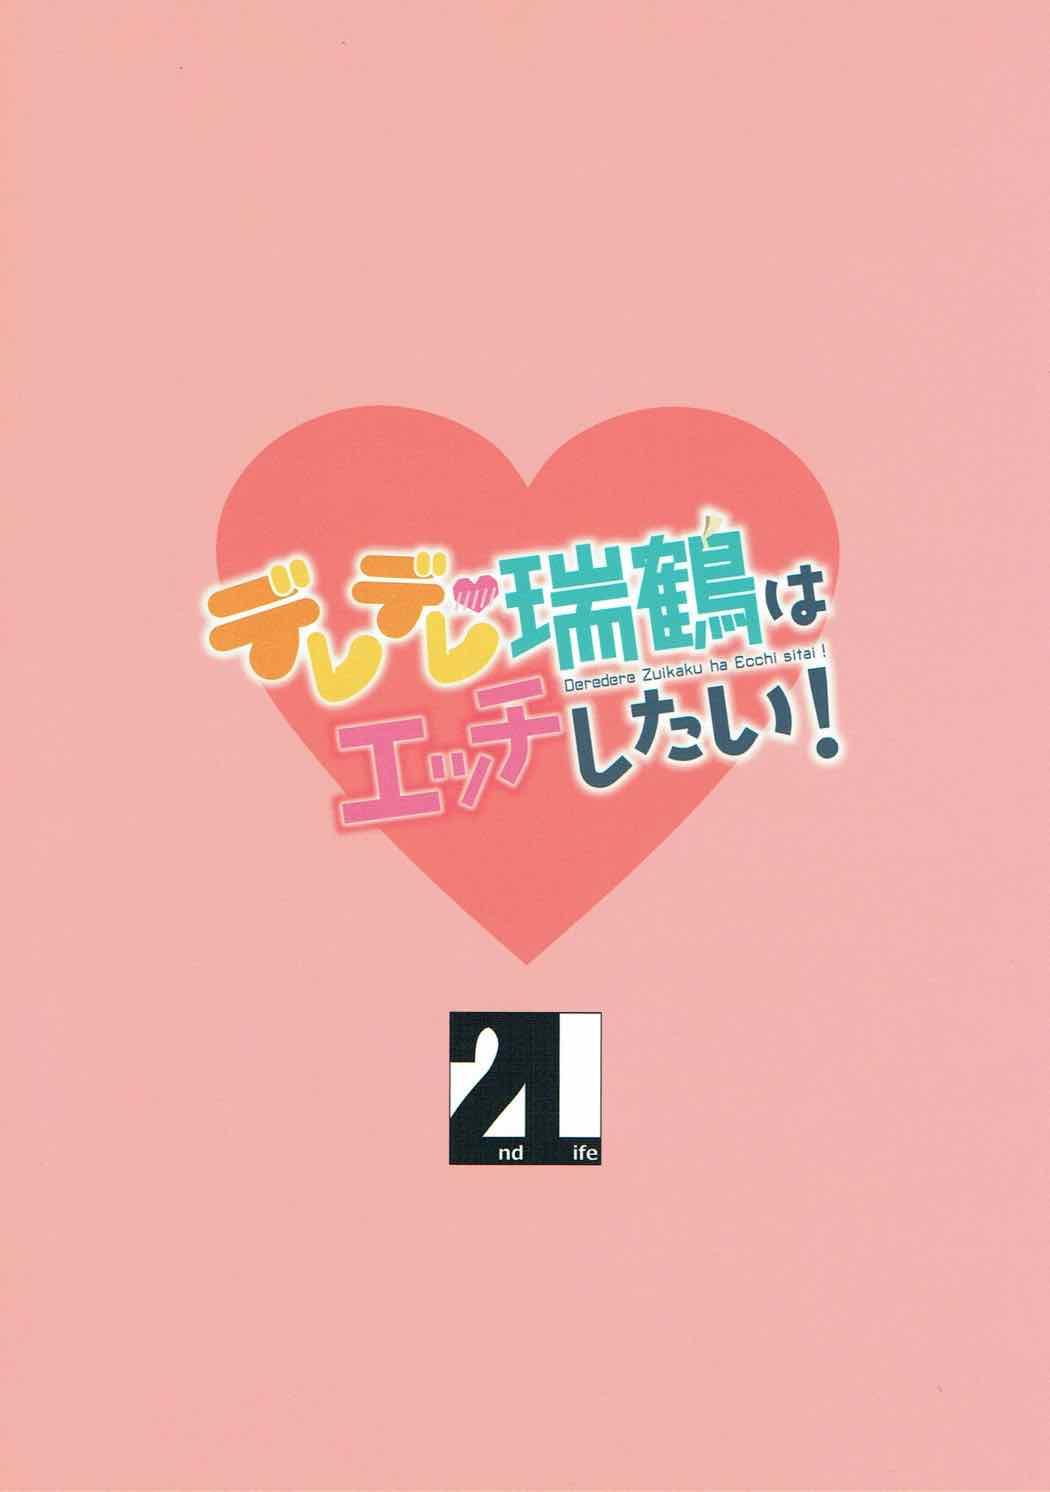 Deredere Zuikaku wa Ecchi Shitai! 25